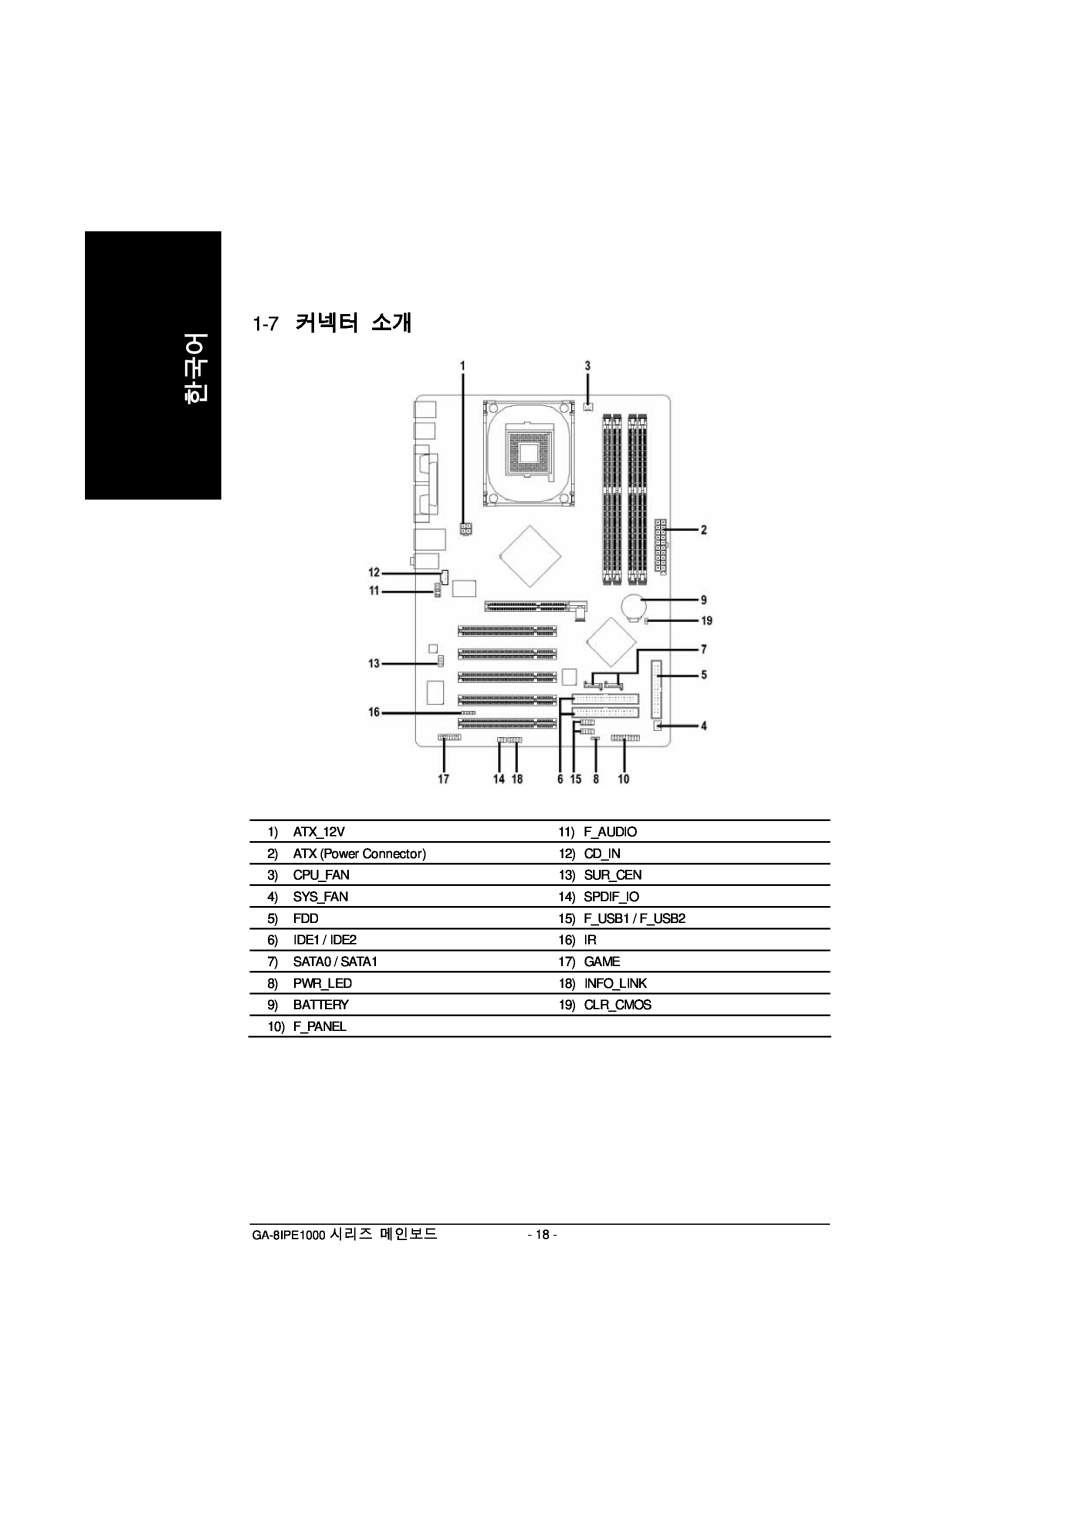 Intel GA-8IPE1000 manual 1-7 커넥터 소개 